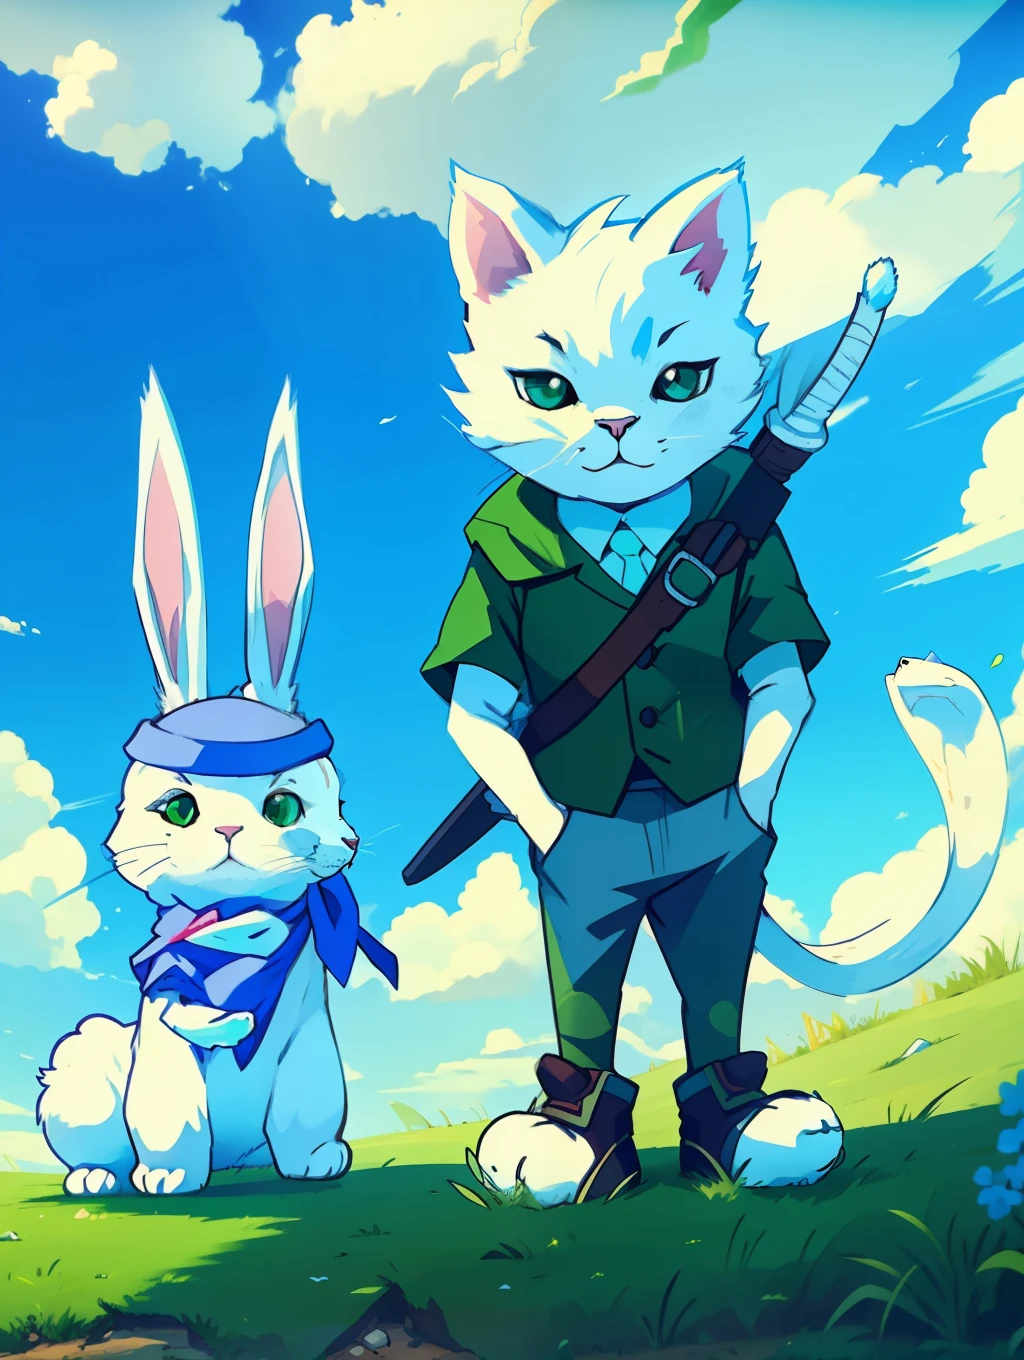 حرفين, قطة بيضاء وأرنب, الخلفية مع العشب الأخضر والسماء الزرقاء, نمط الرسوم المتحركة, مواجهات واضحة المعالم, الألوان الزاهية و, الشخصيات الكاريزمية